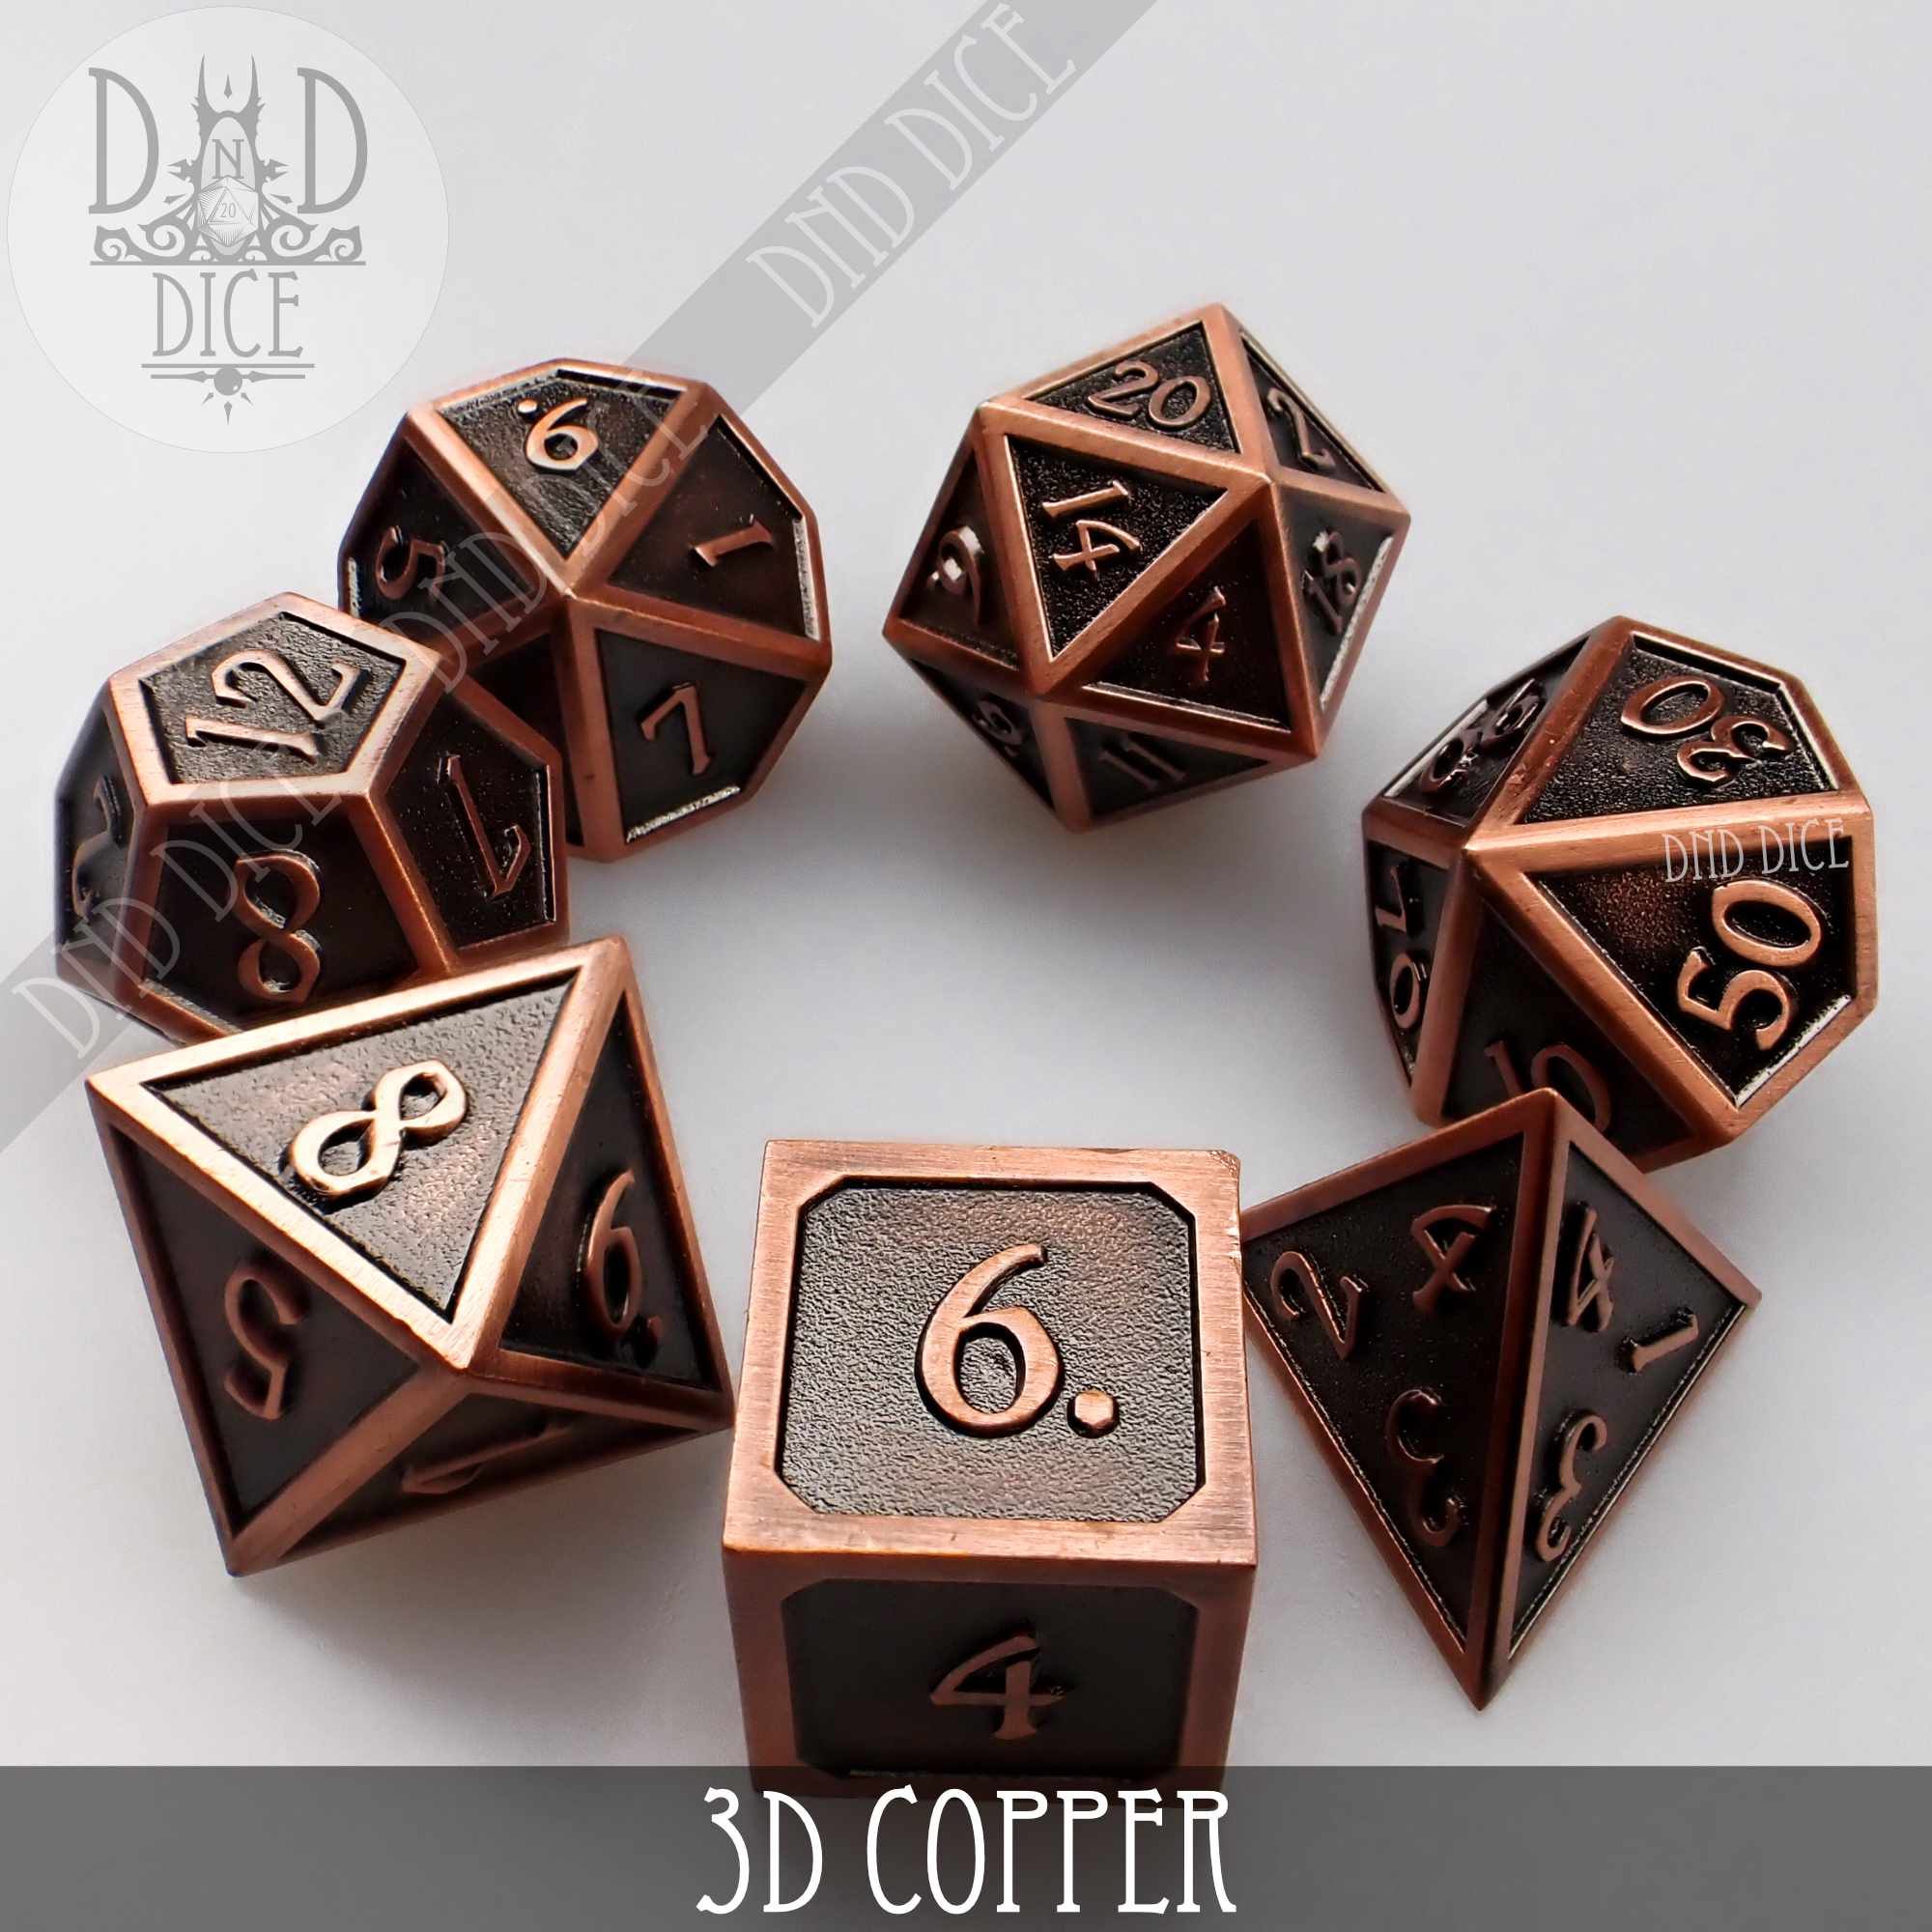 3D Copper Metal Dice Set